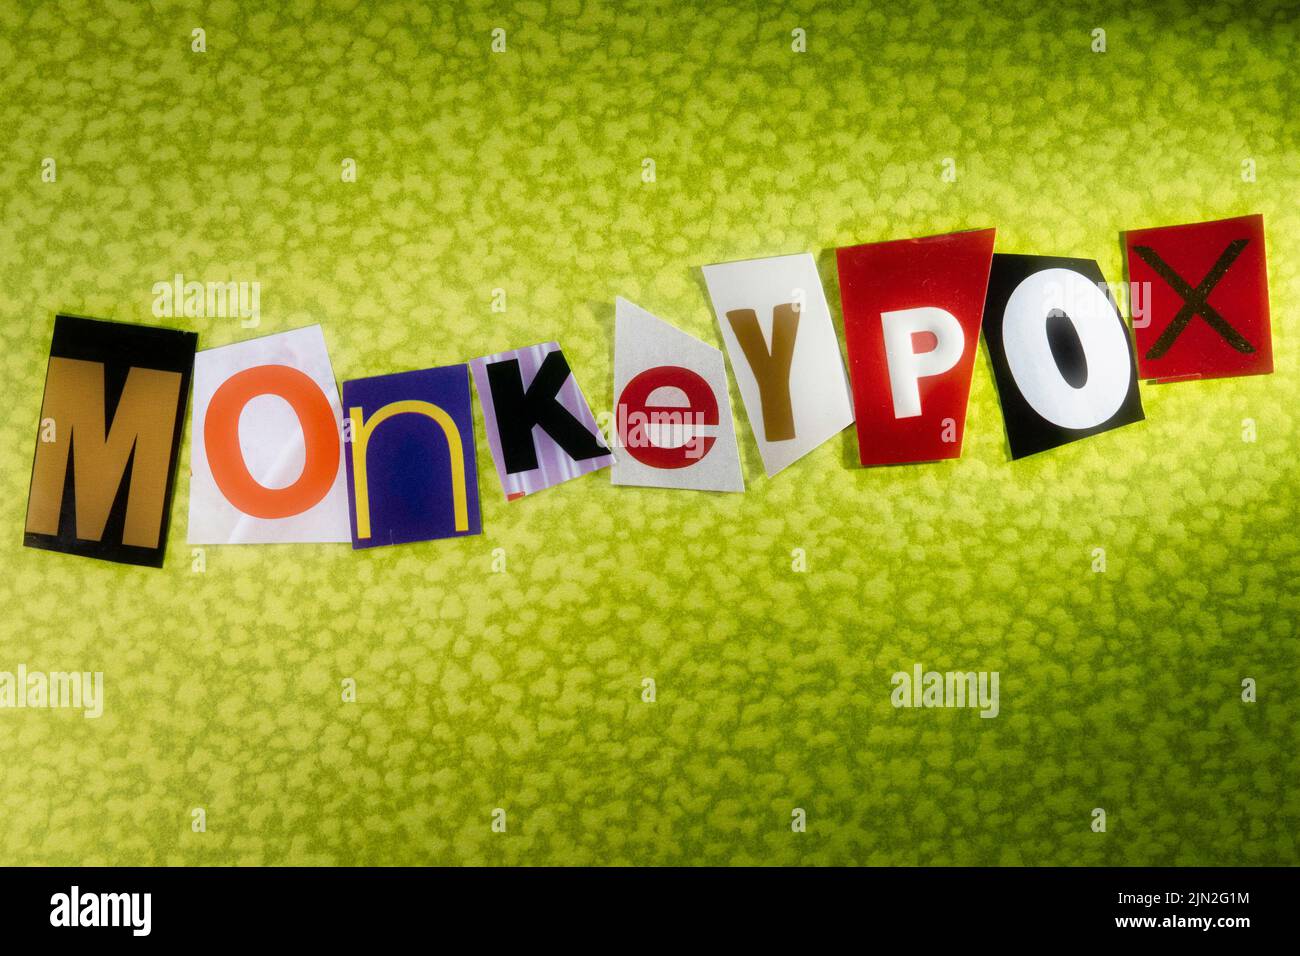 La palabra 'Monkeypox' se escribe en tipografía de estilo de nota de rescate, USA 2022 Foto de stock